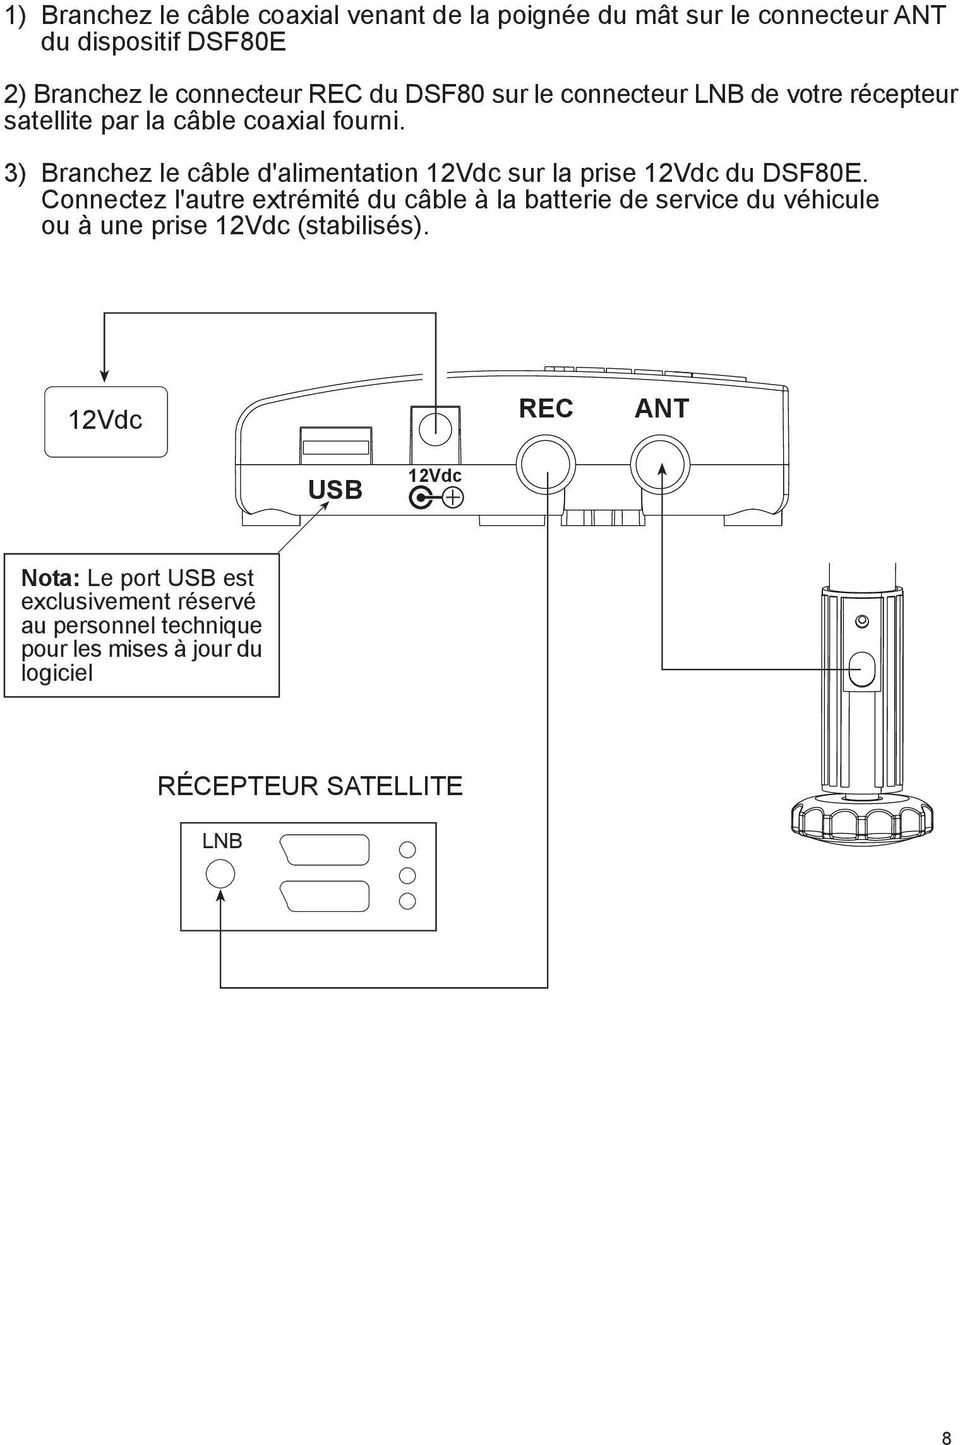 3) Branchez le câble d'alimentation 12Vdc sur la prise 12Vdc du DSF80E.